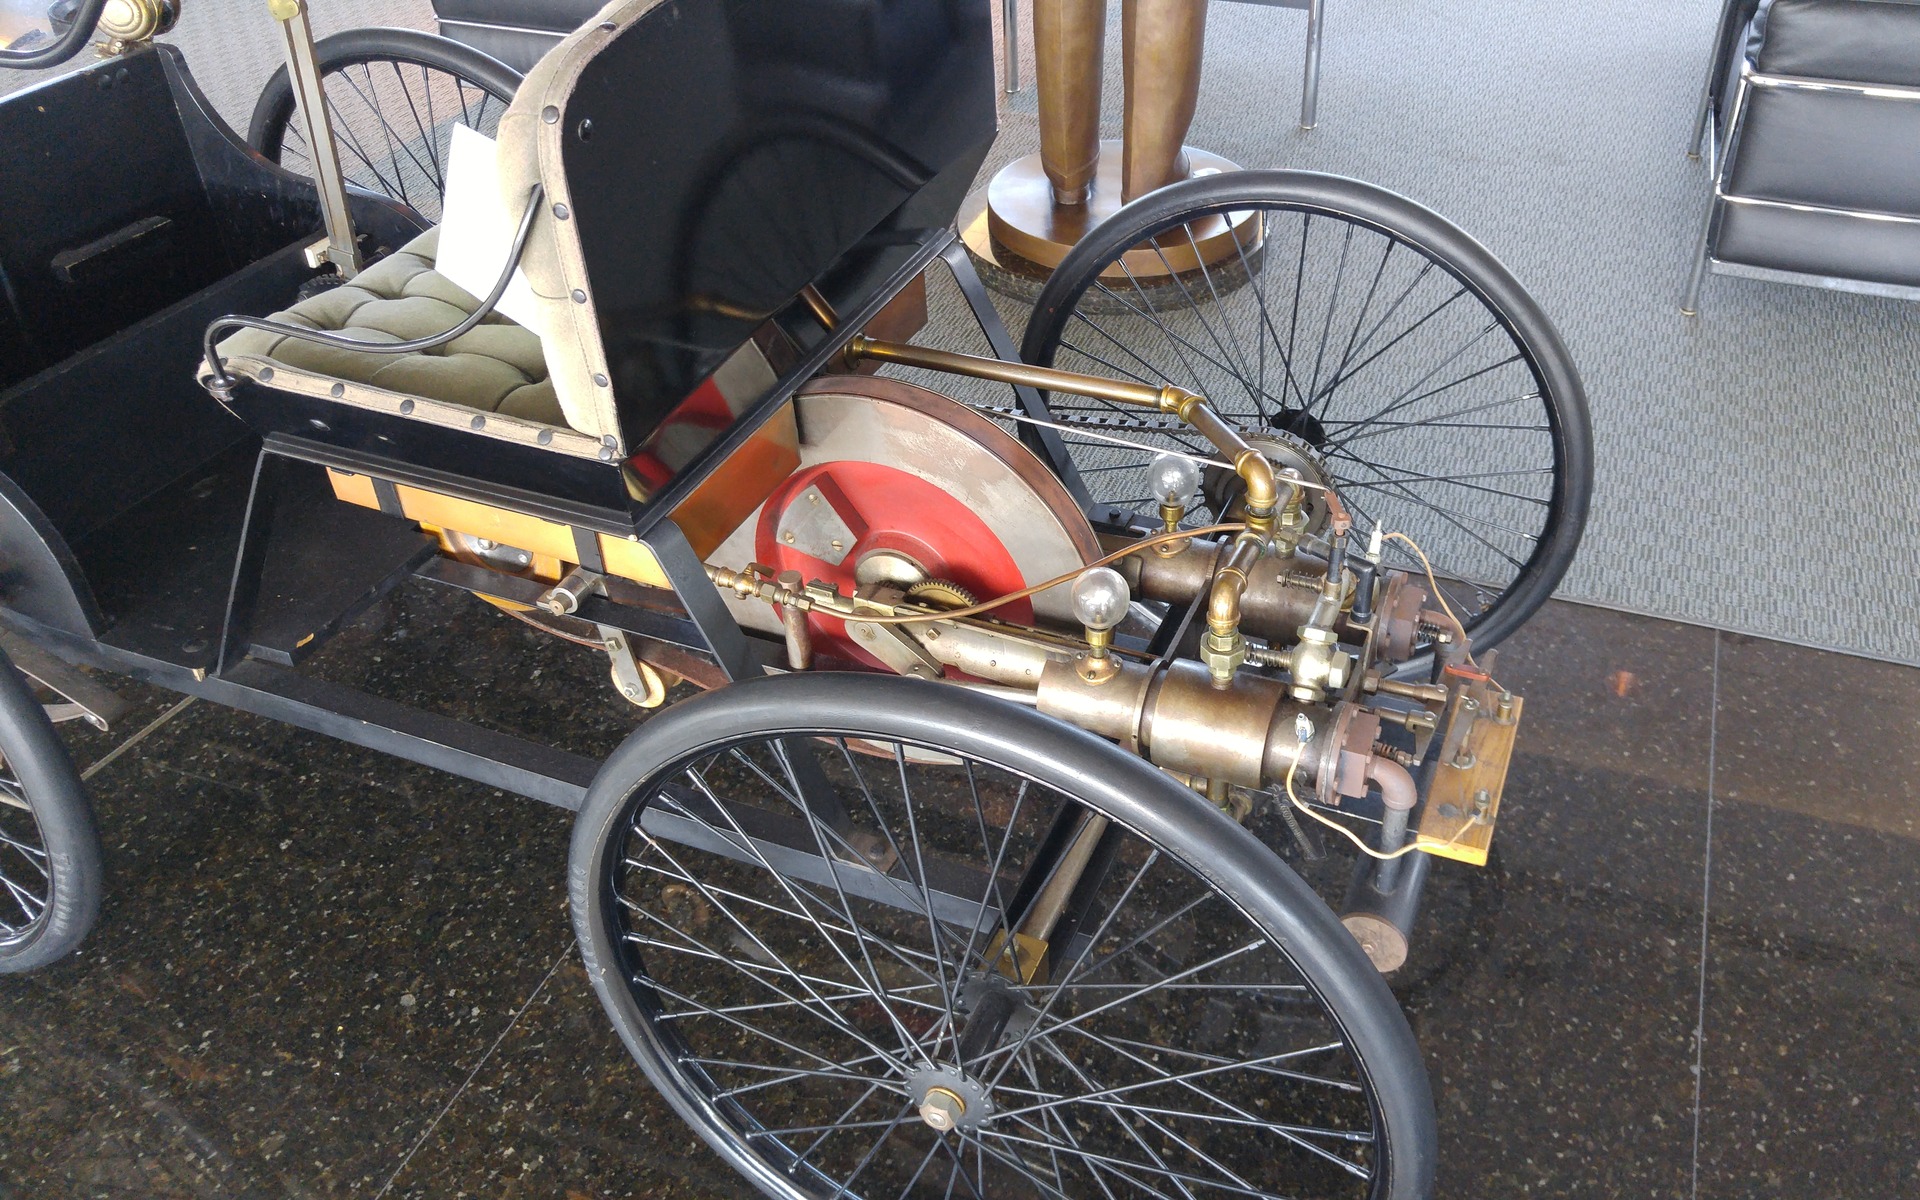 The Quadricycle's engine